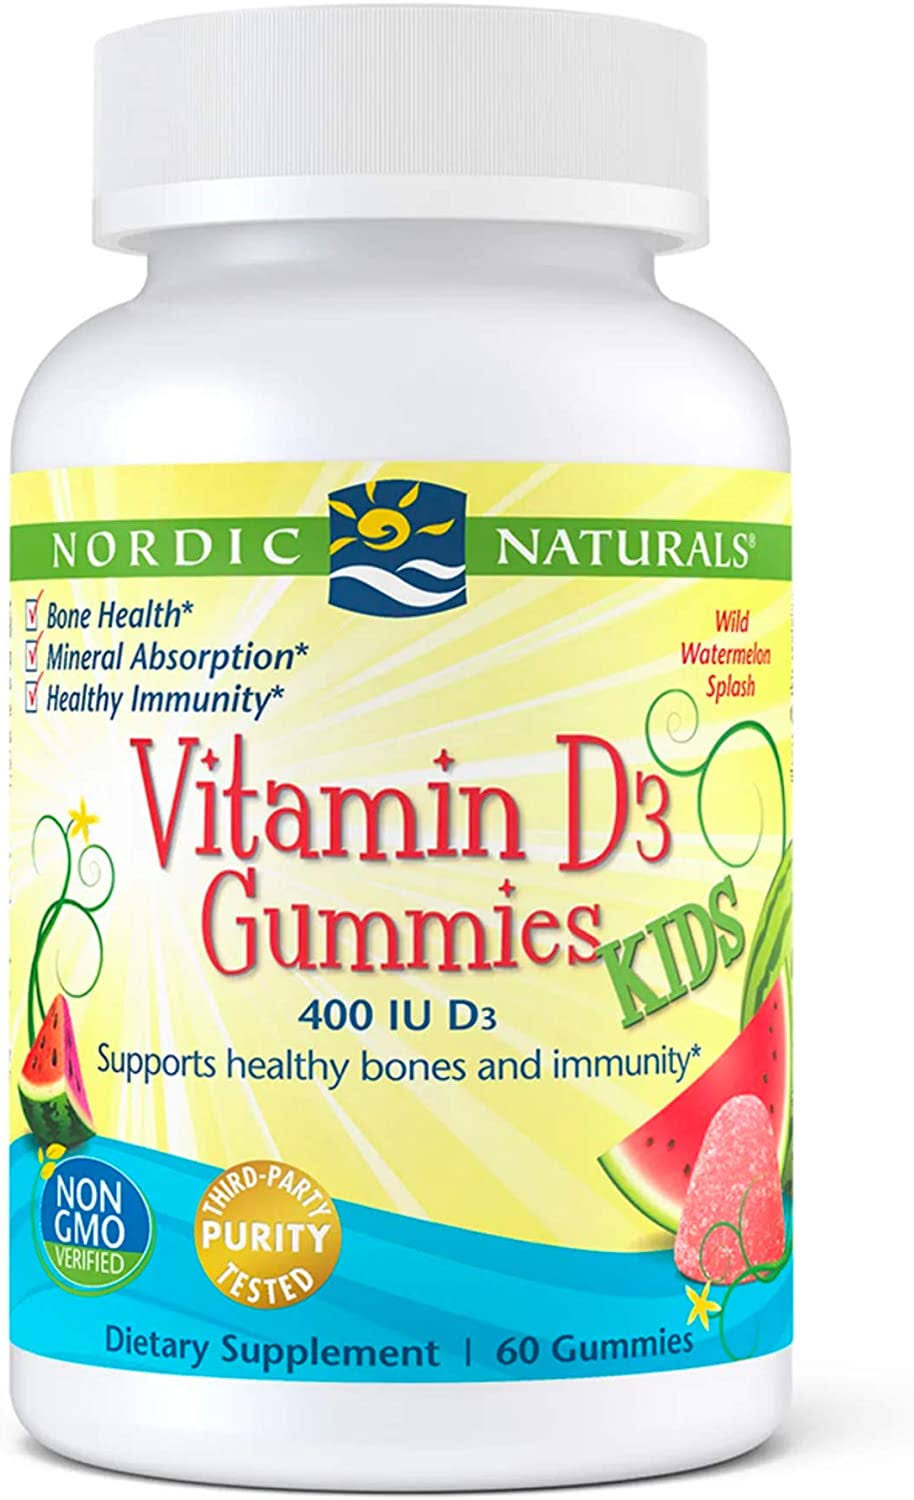 Nordic Naturals Kids Vitamin D3 Gummies - Wild Watermelon, x60